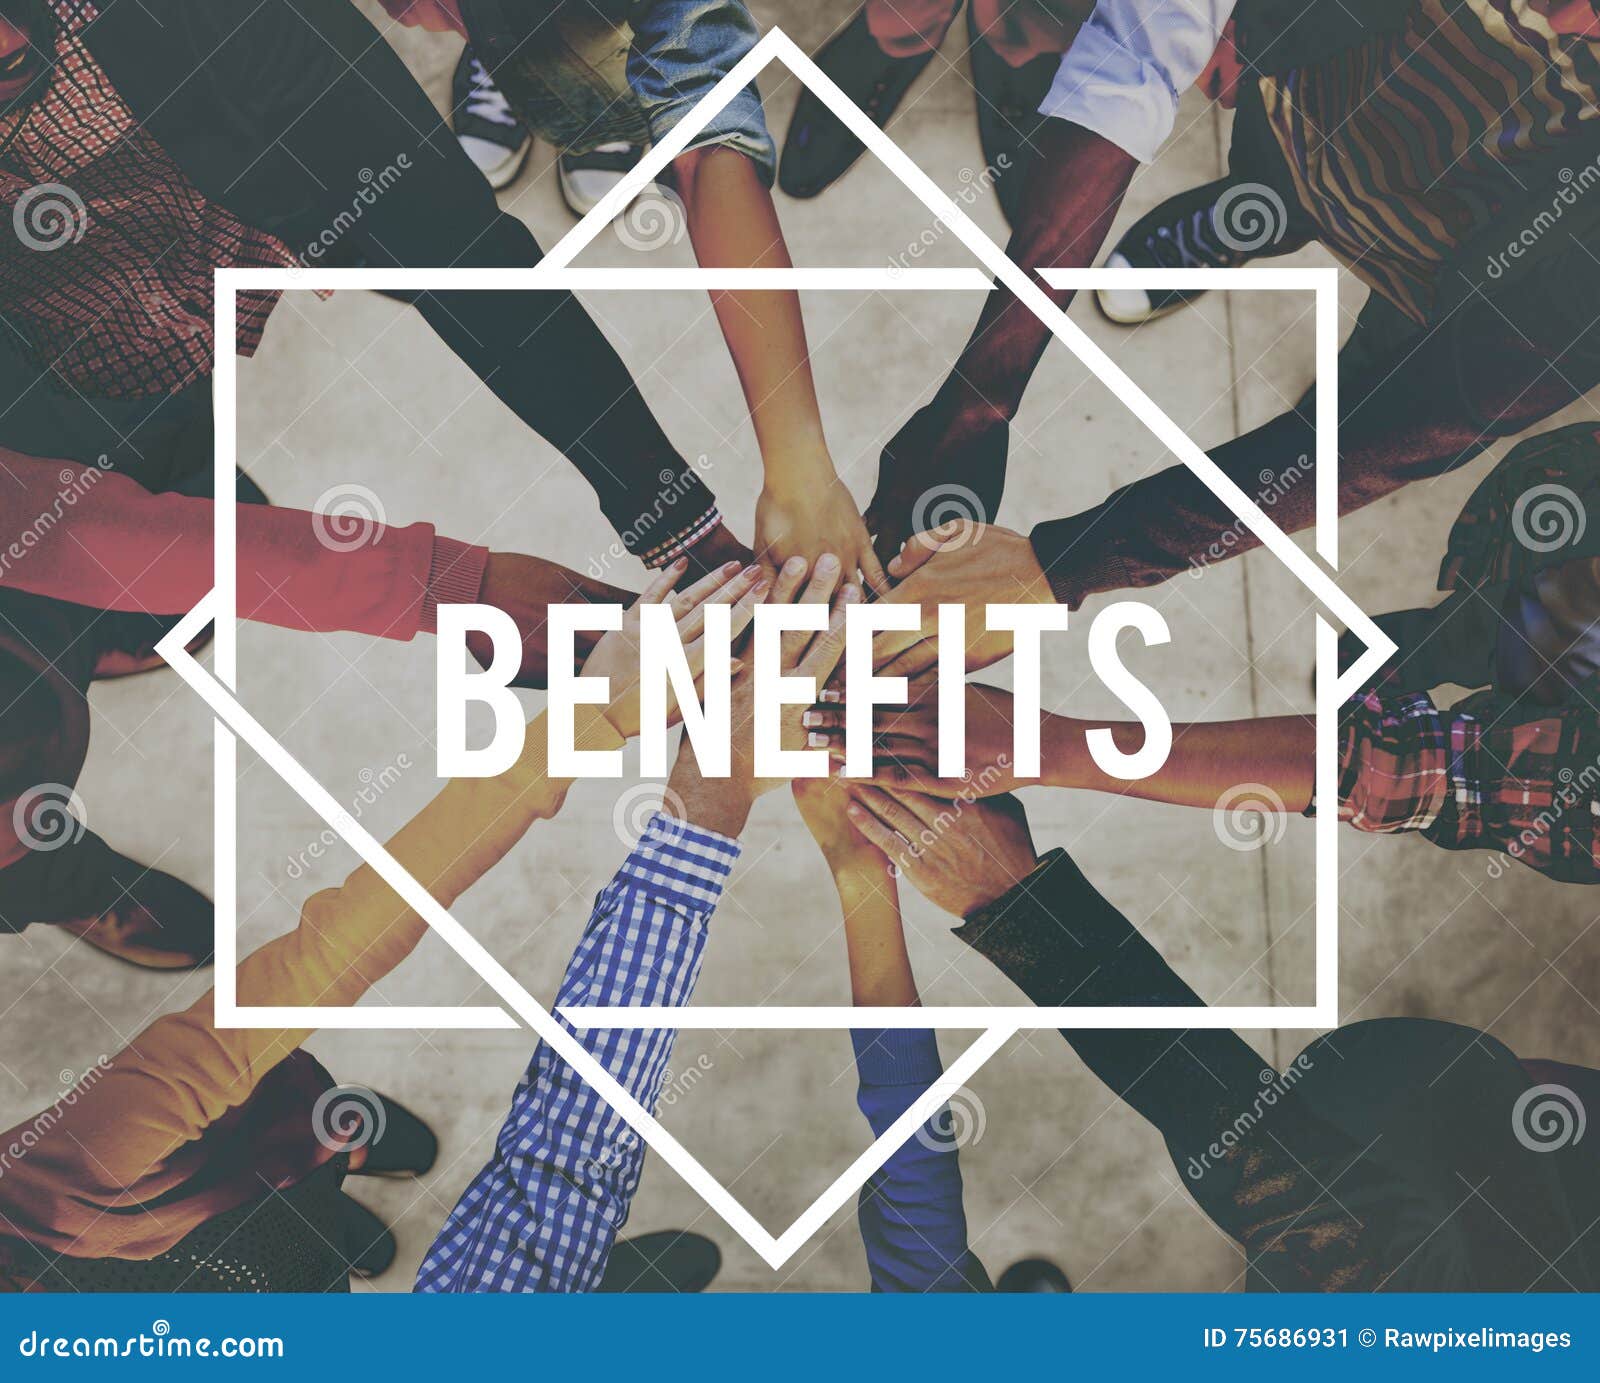 benefits advantage assistance income value concept